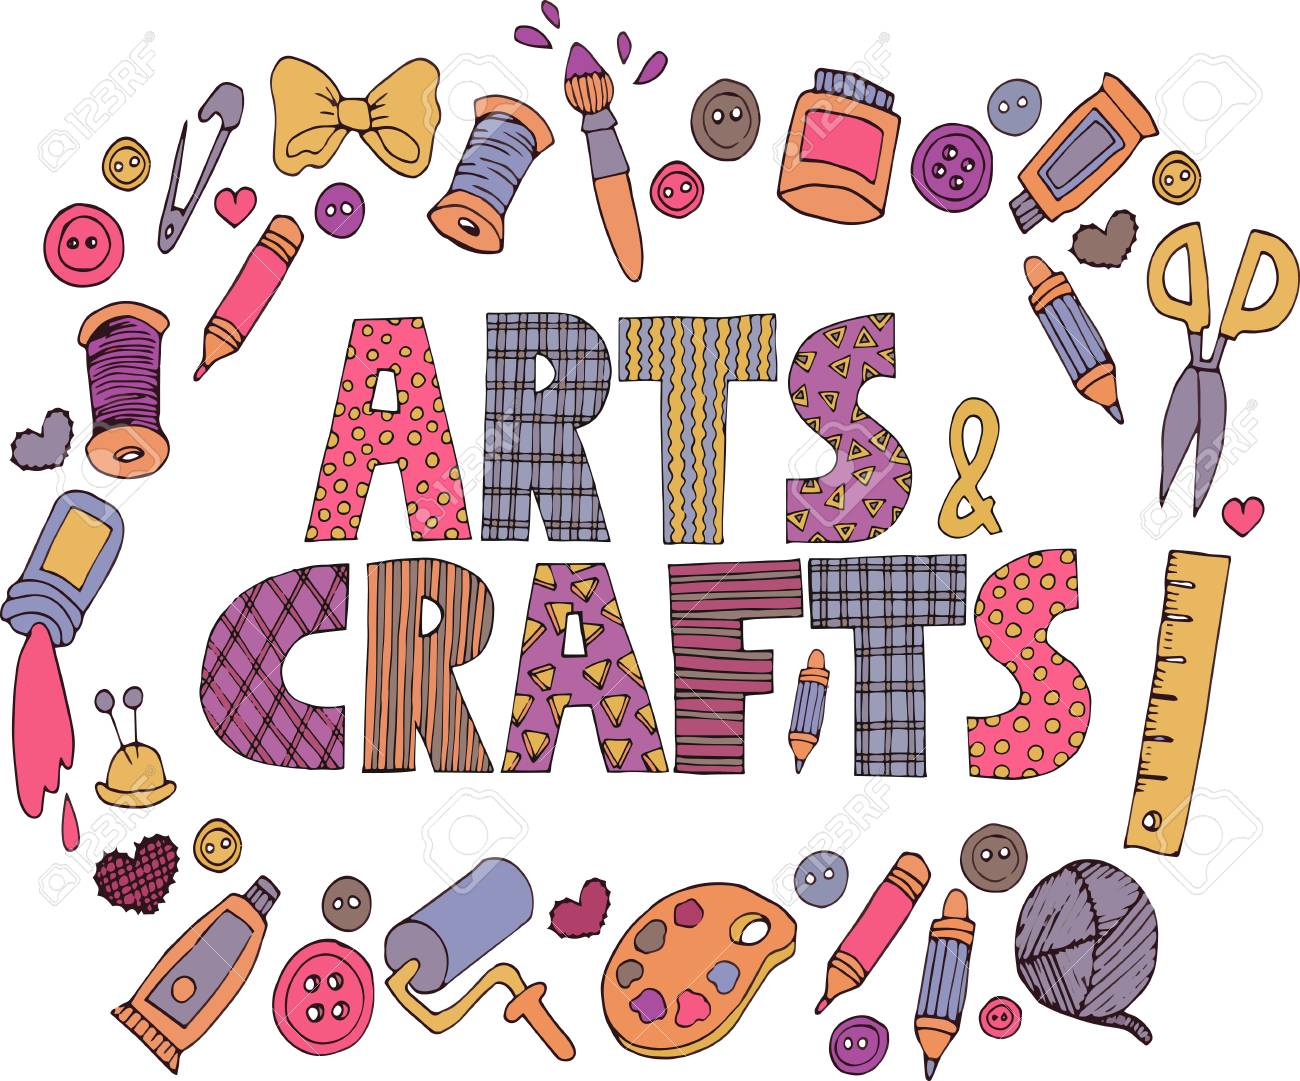 sewing clipart art craft fair